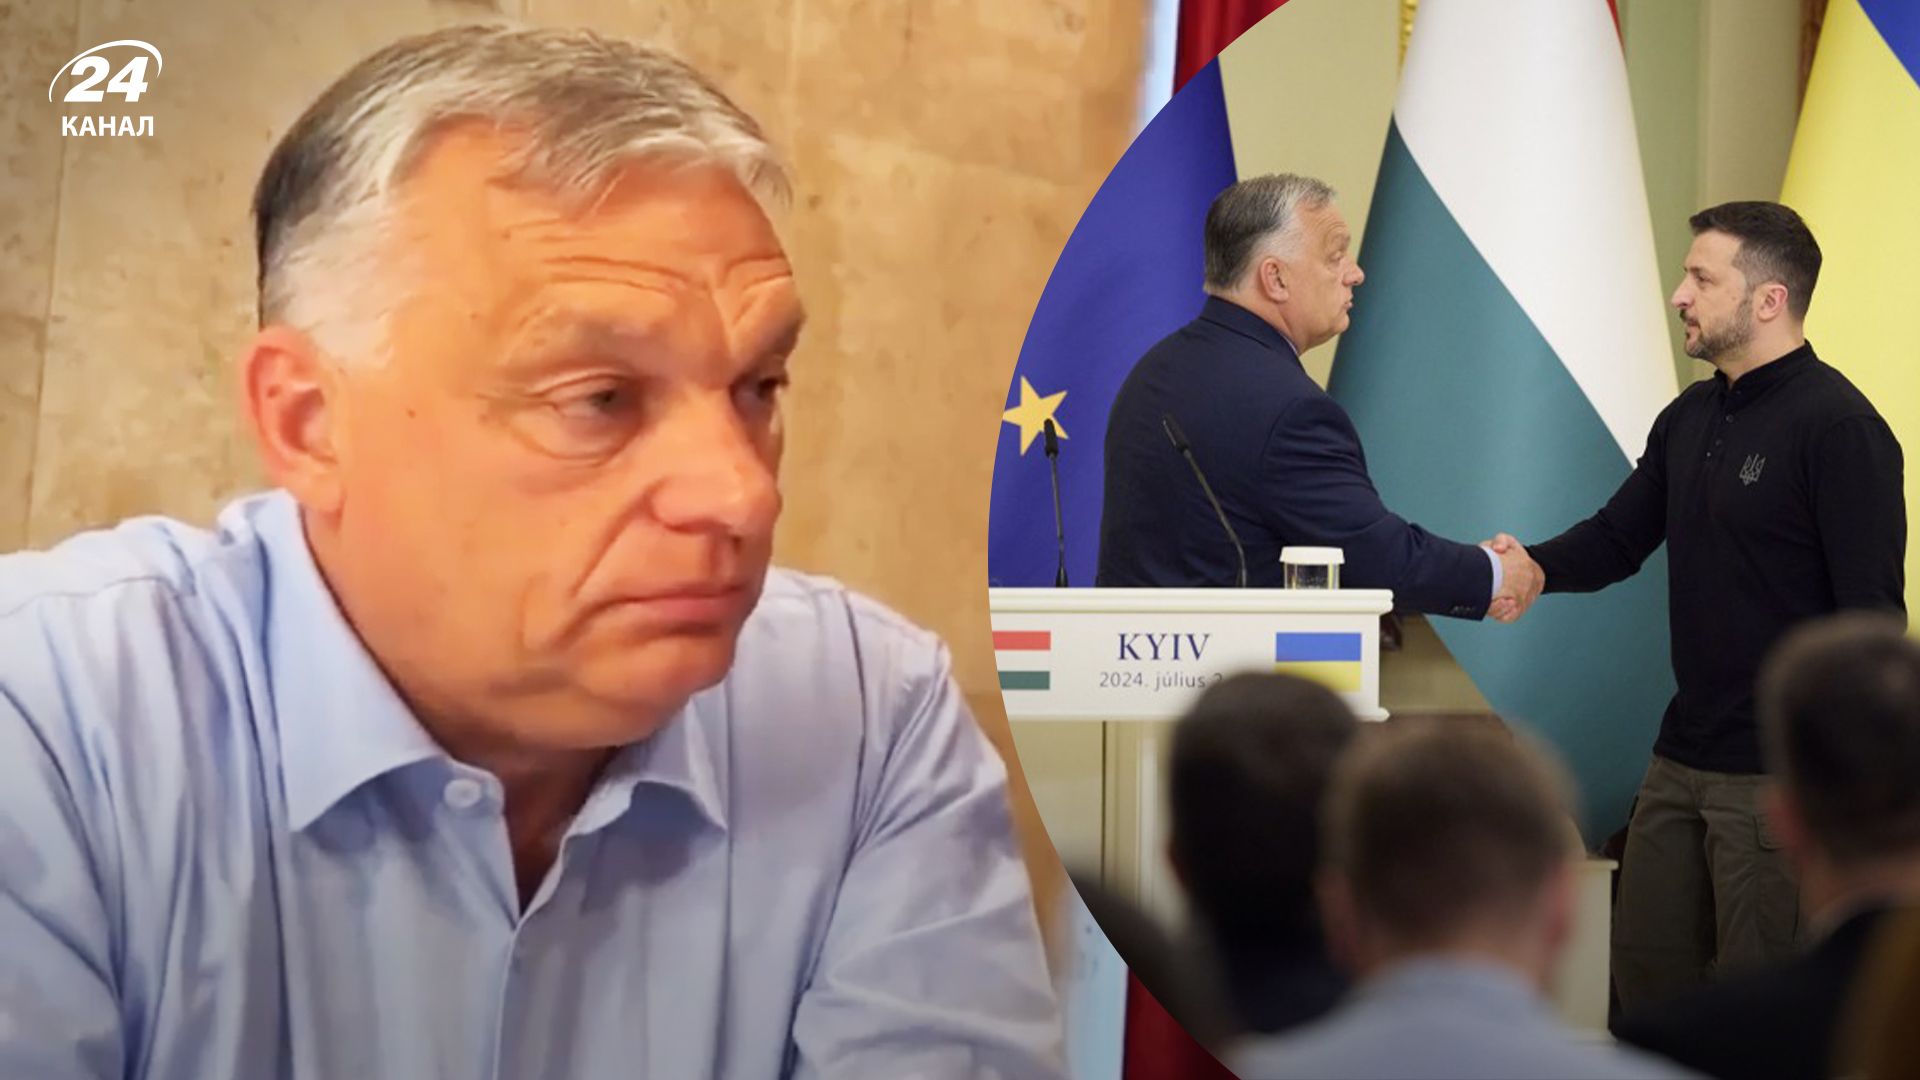 Что сказал Орбан о встрече с Зеленским в Киеве 2 июля